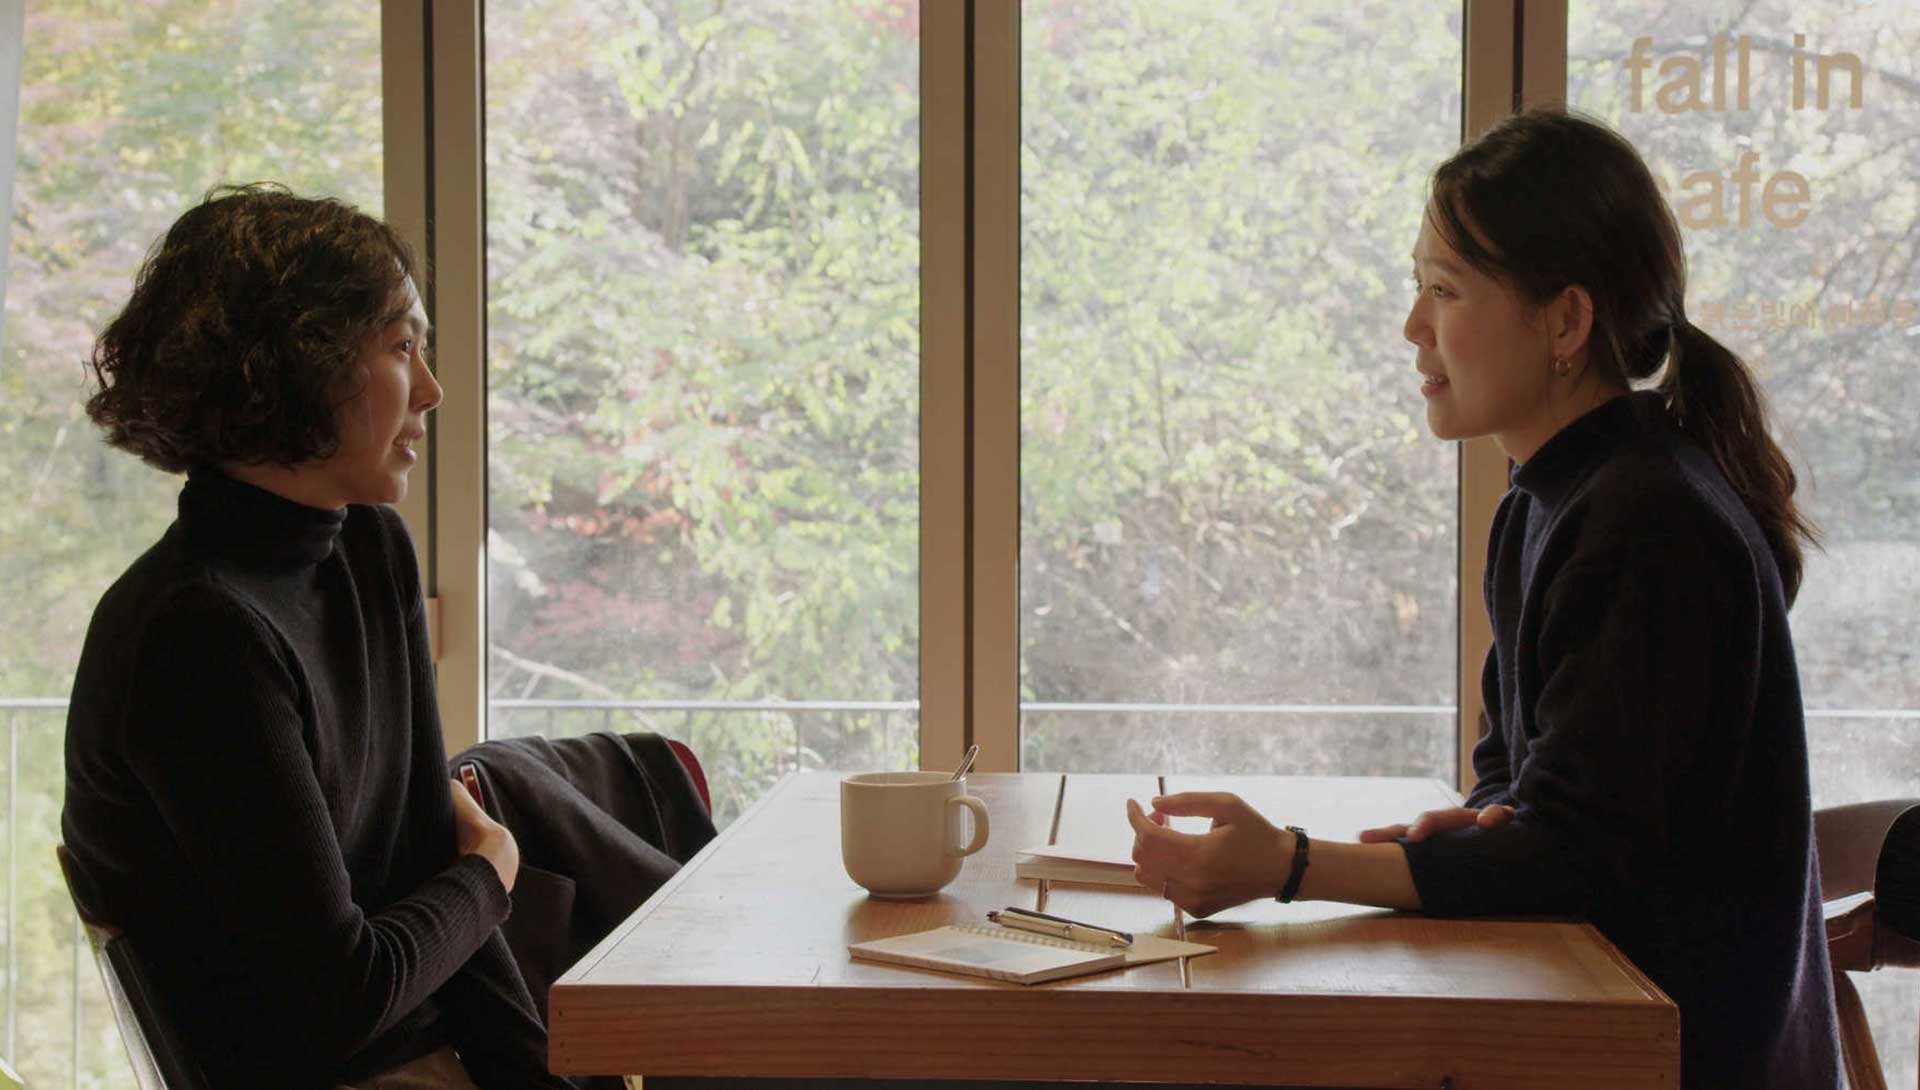 Deux femmes discutent. Extrait du film La femme qui s'est enfuie de Hong Sang-soo.